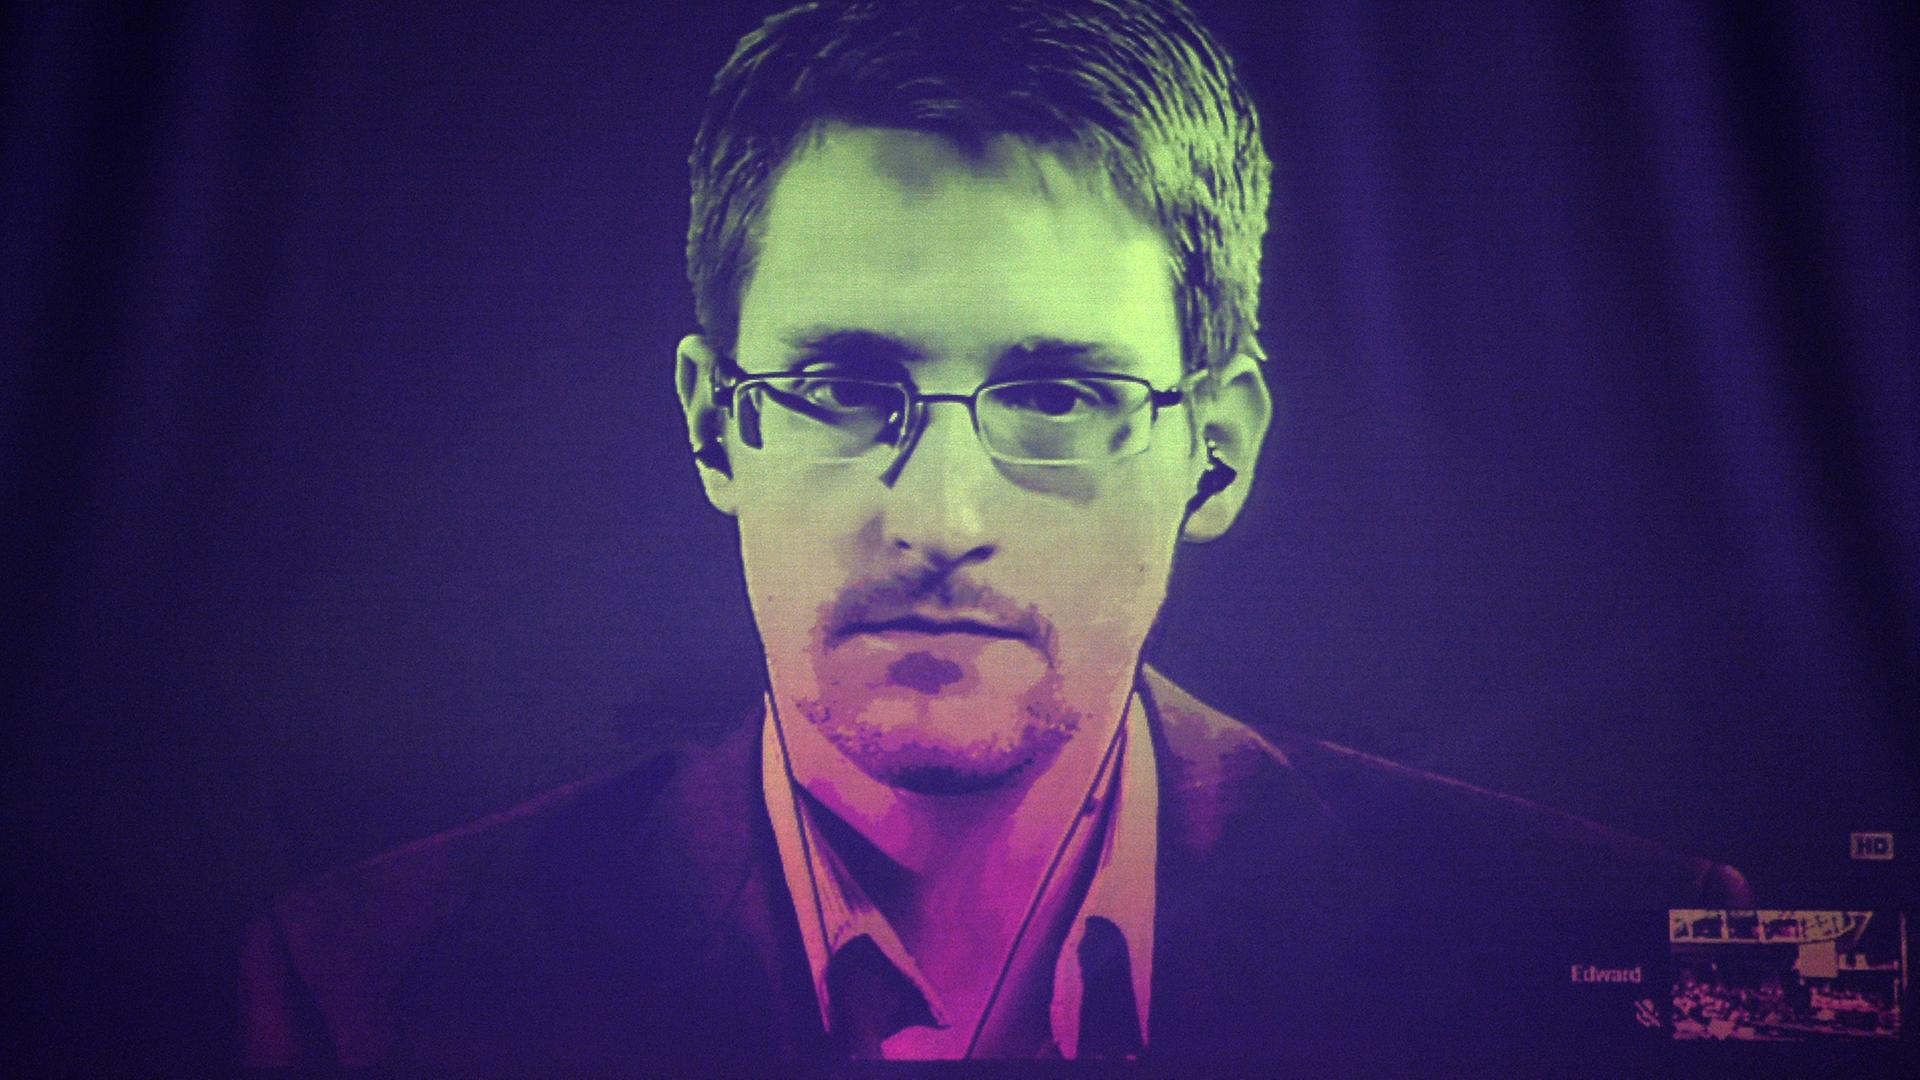 Edward Snowden bei einer Videokonferenz im Juni 2014.